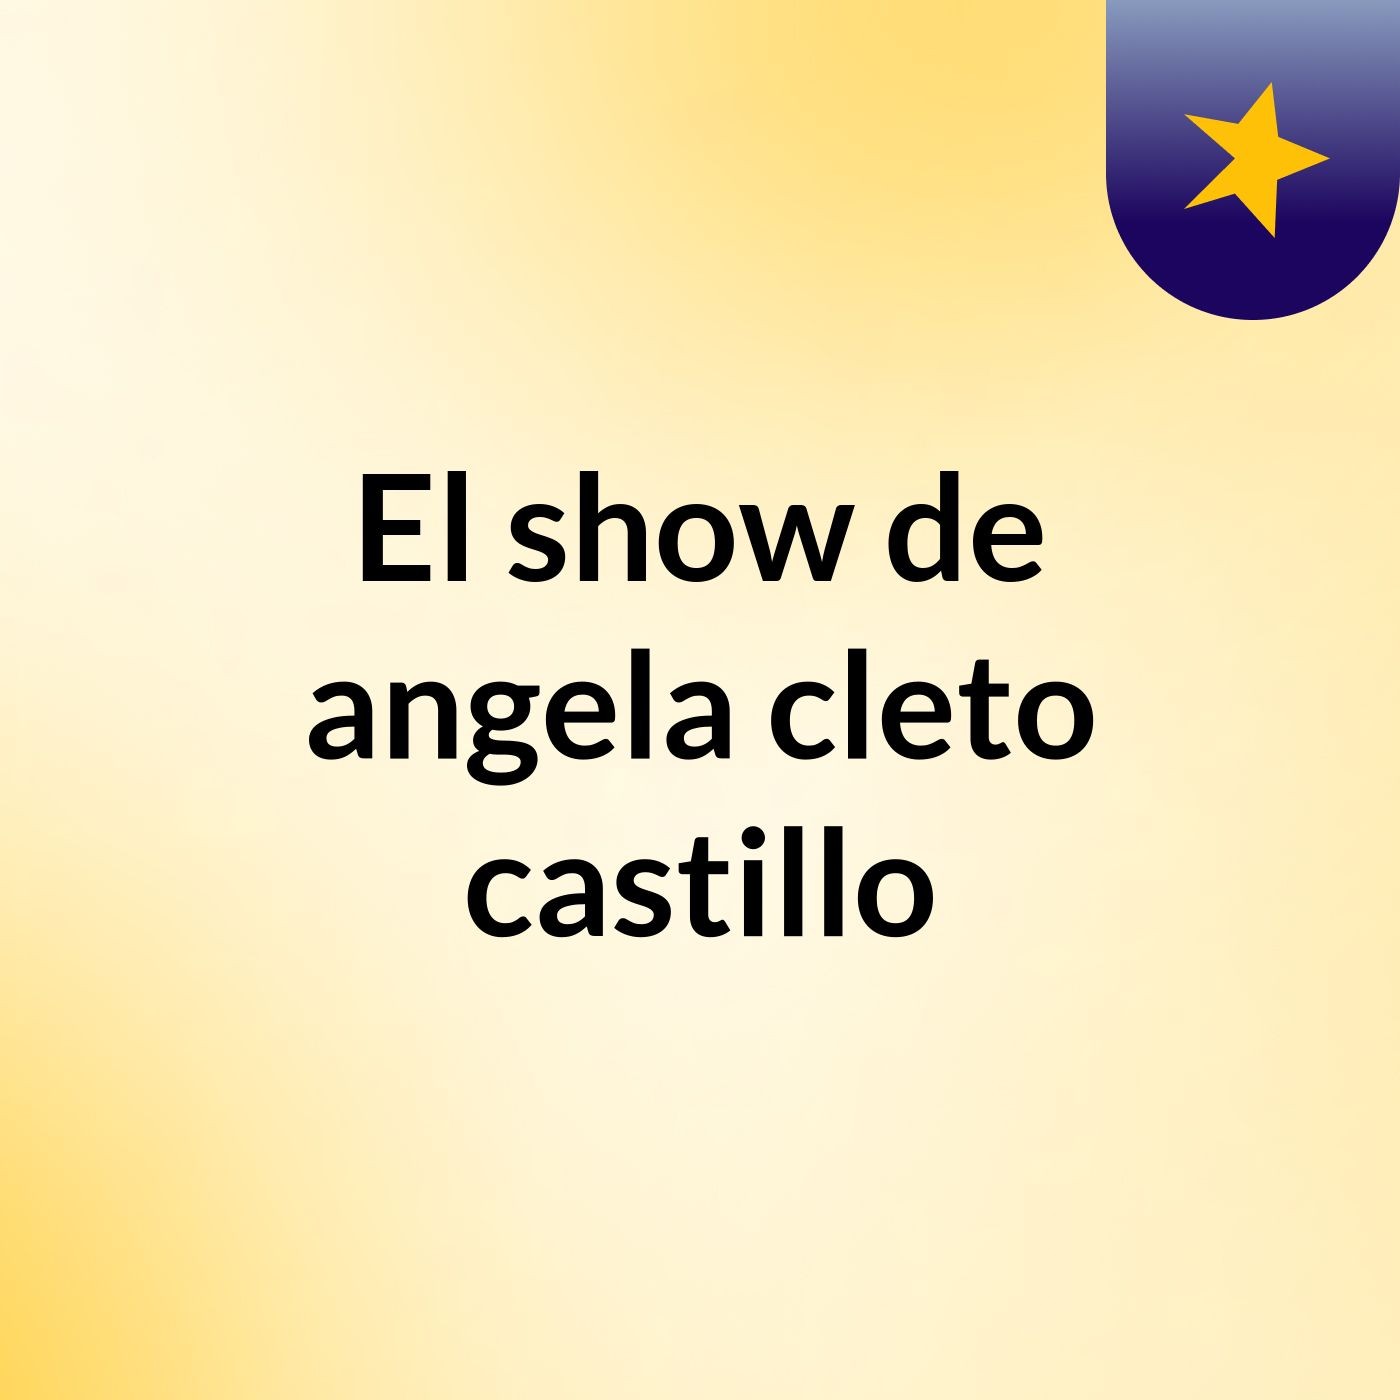 El show de angela cleto castillo